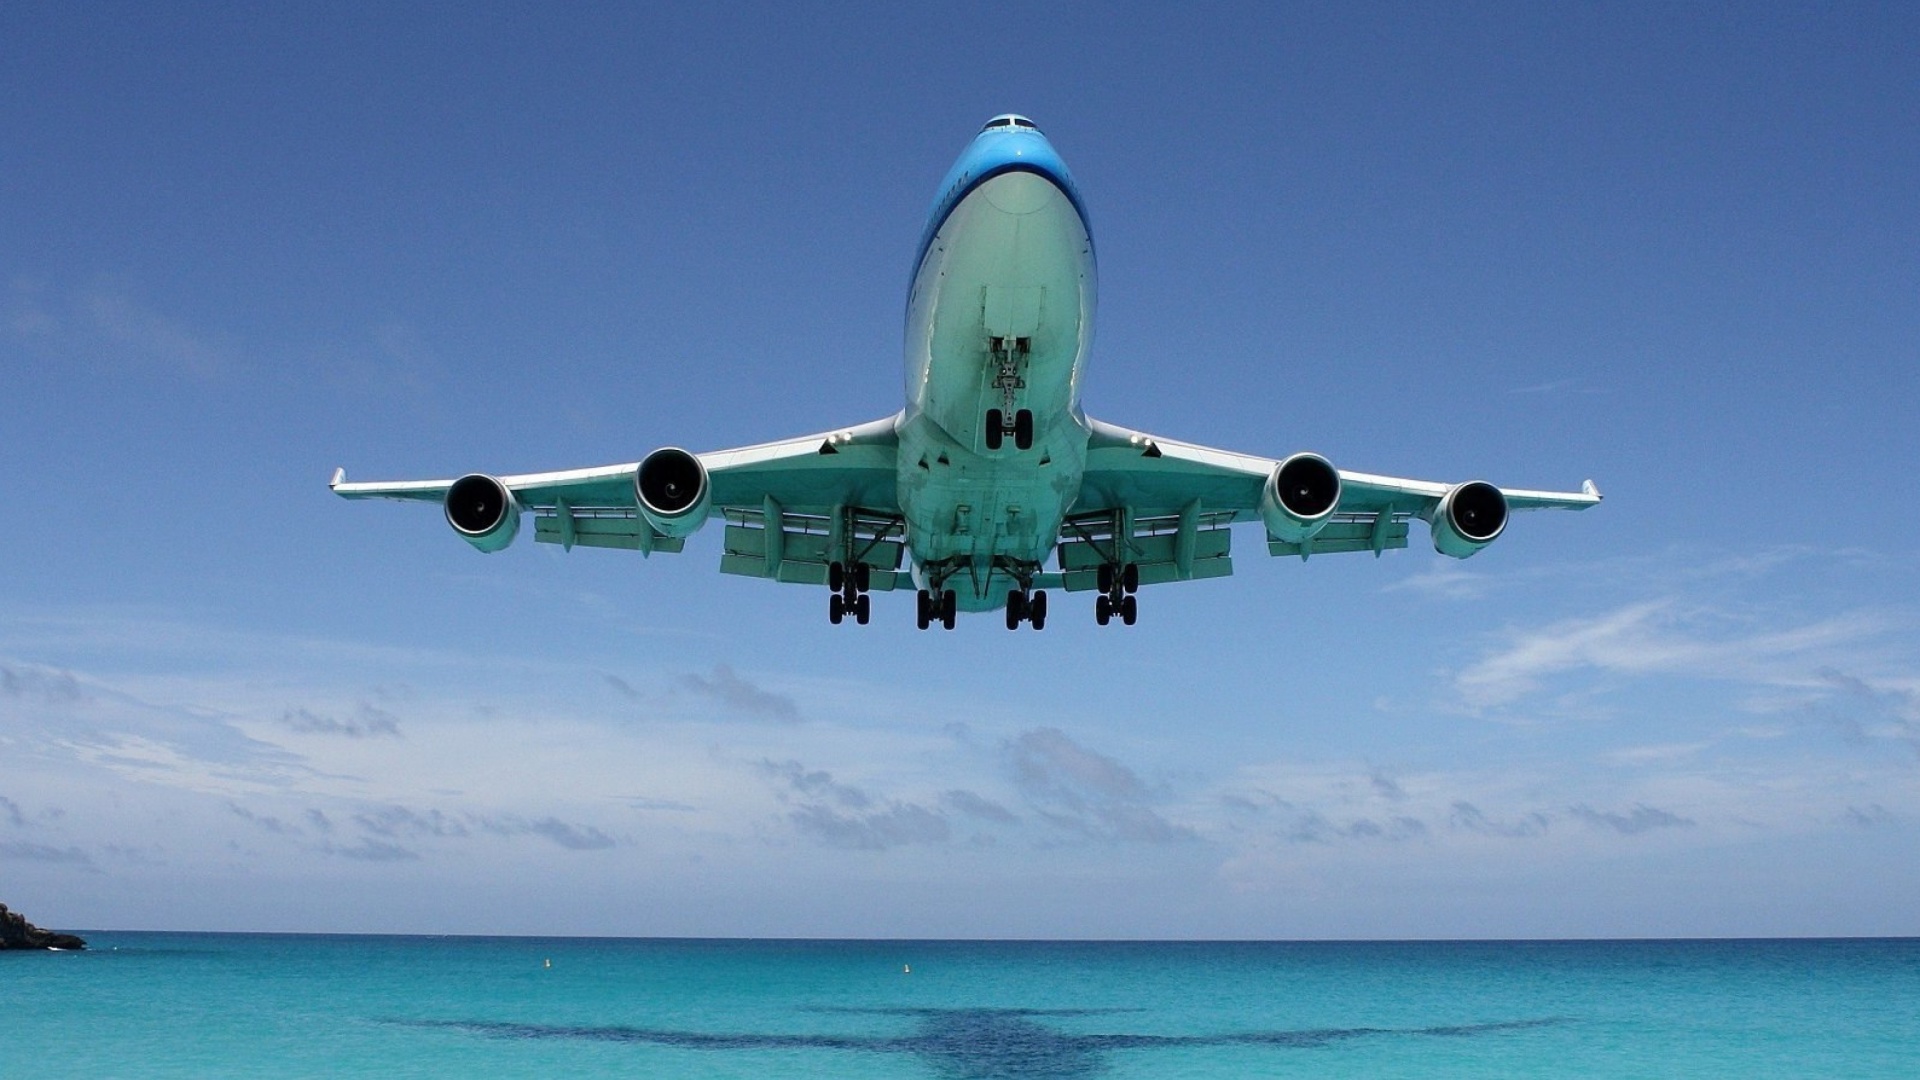 Das Boeing 747 in St Maarten Extreme Airport Wallpaper 1920x1080